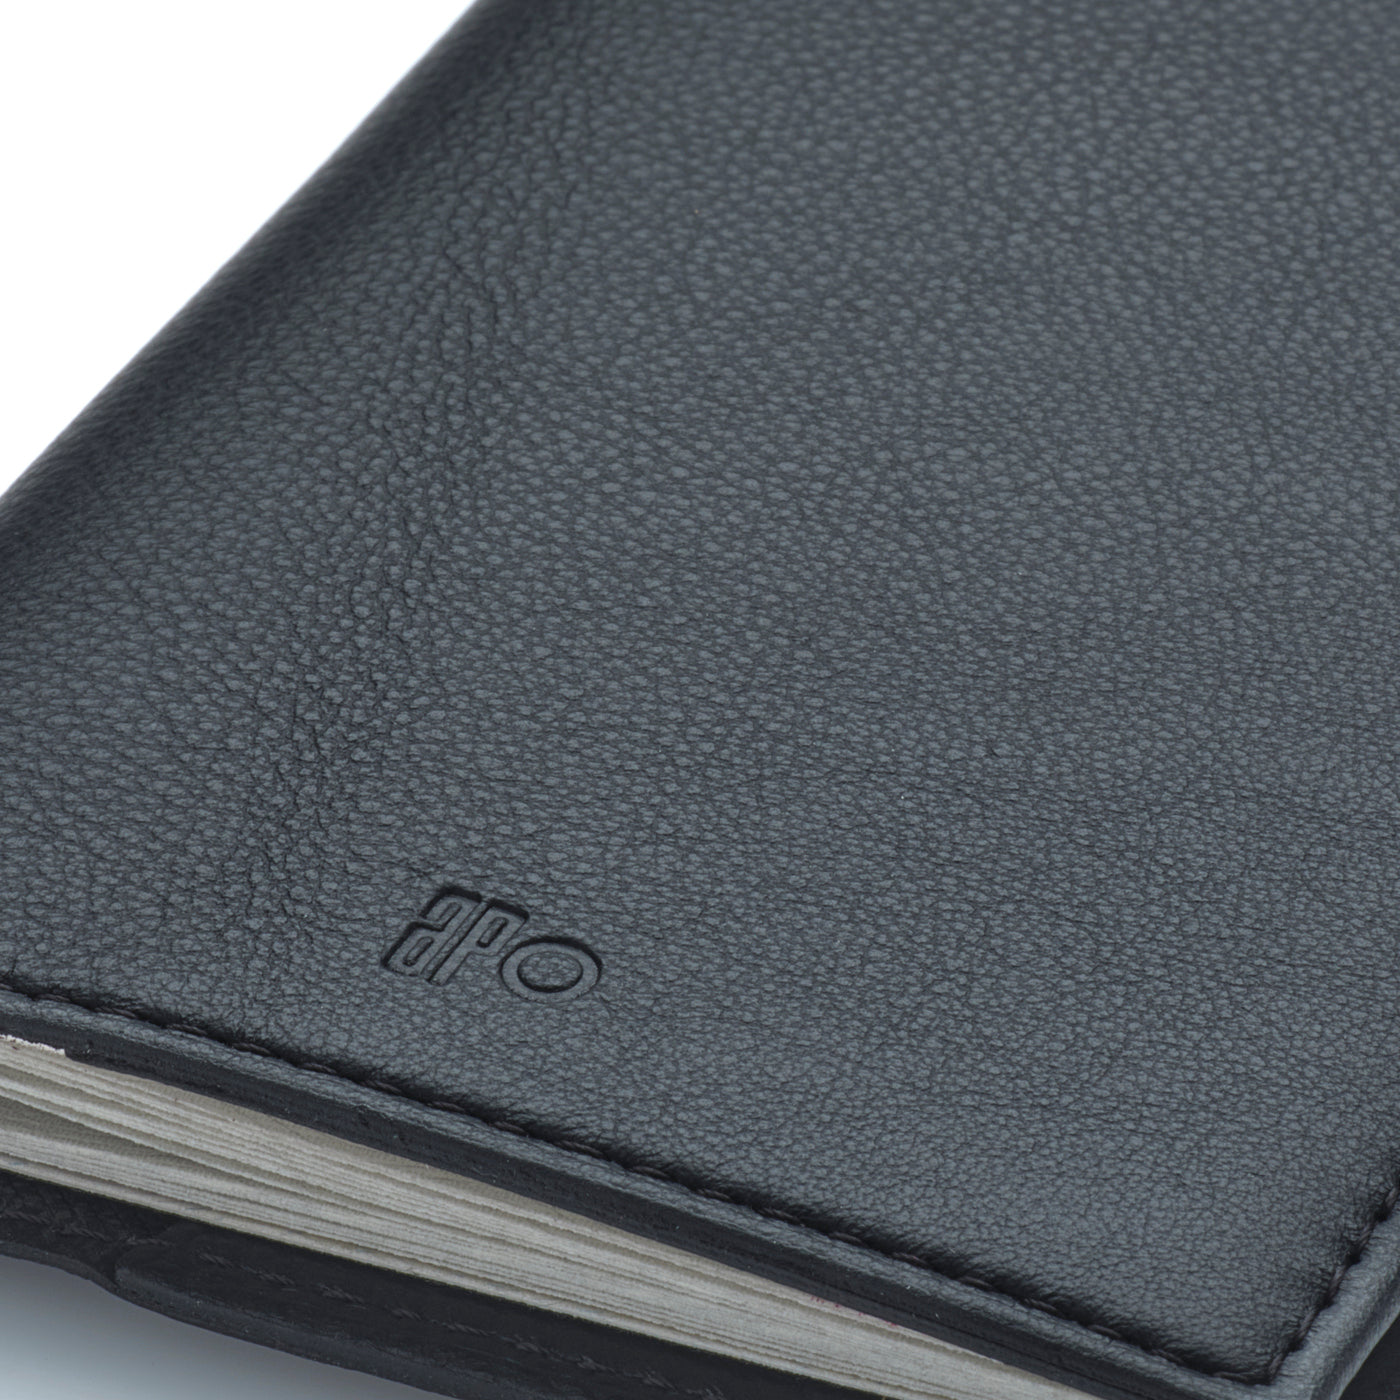 FAB - Porte-passeport en cuir grainé - noir